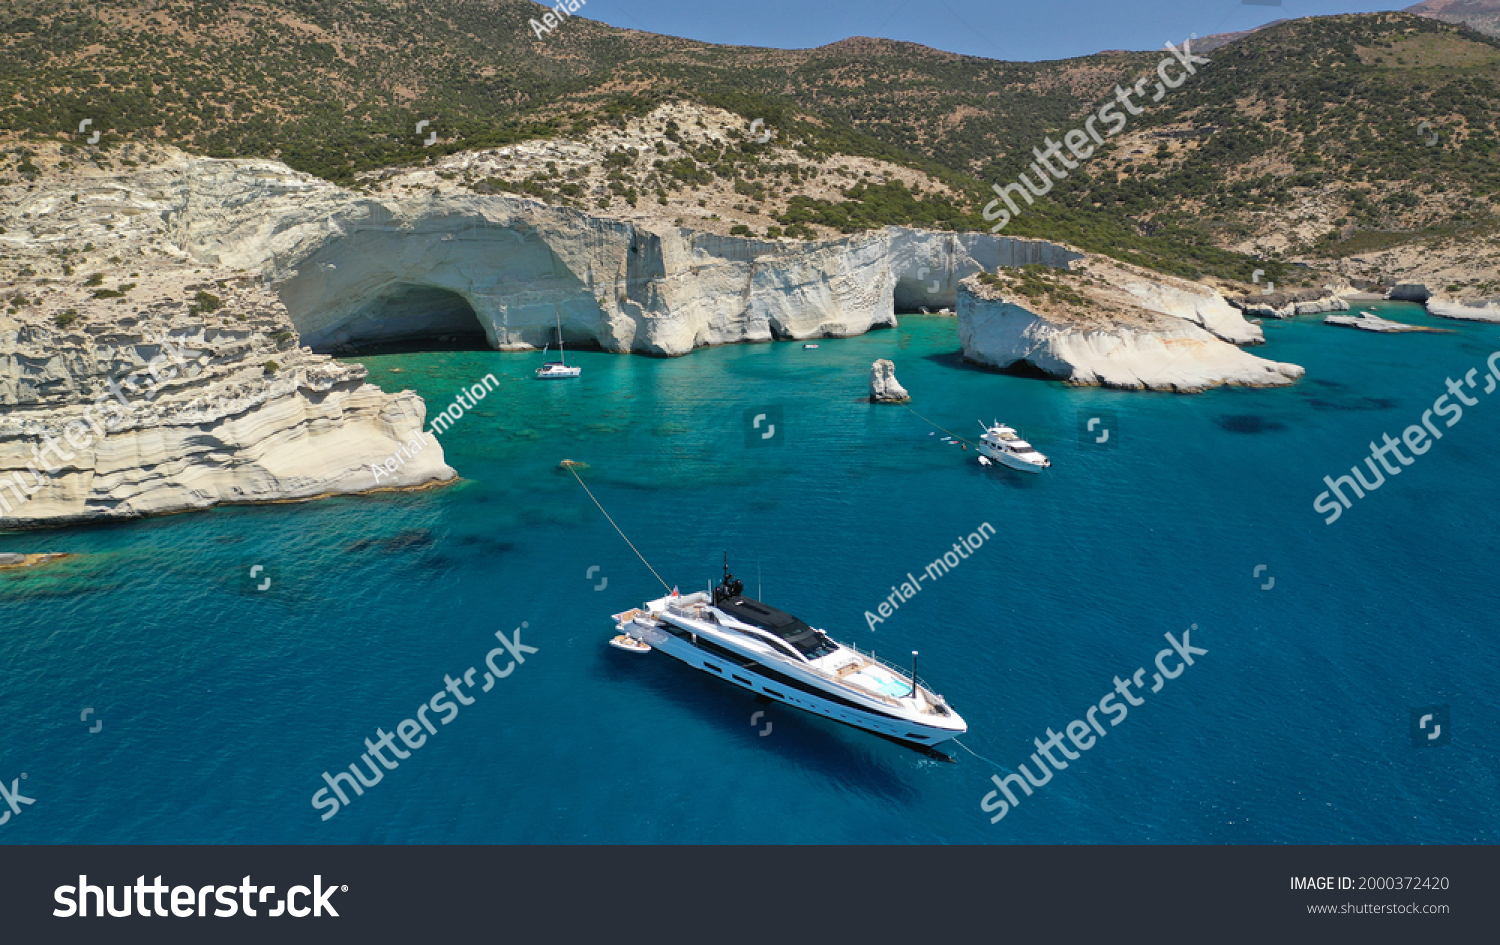 Aegean Afbeeldingen Stockfotos En Vectoren Shutterstock